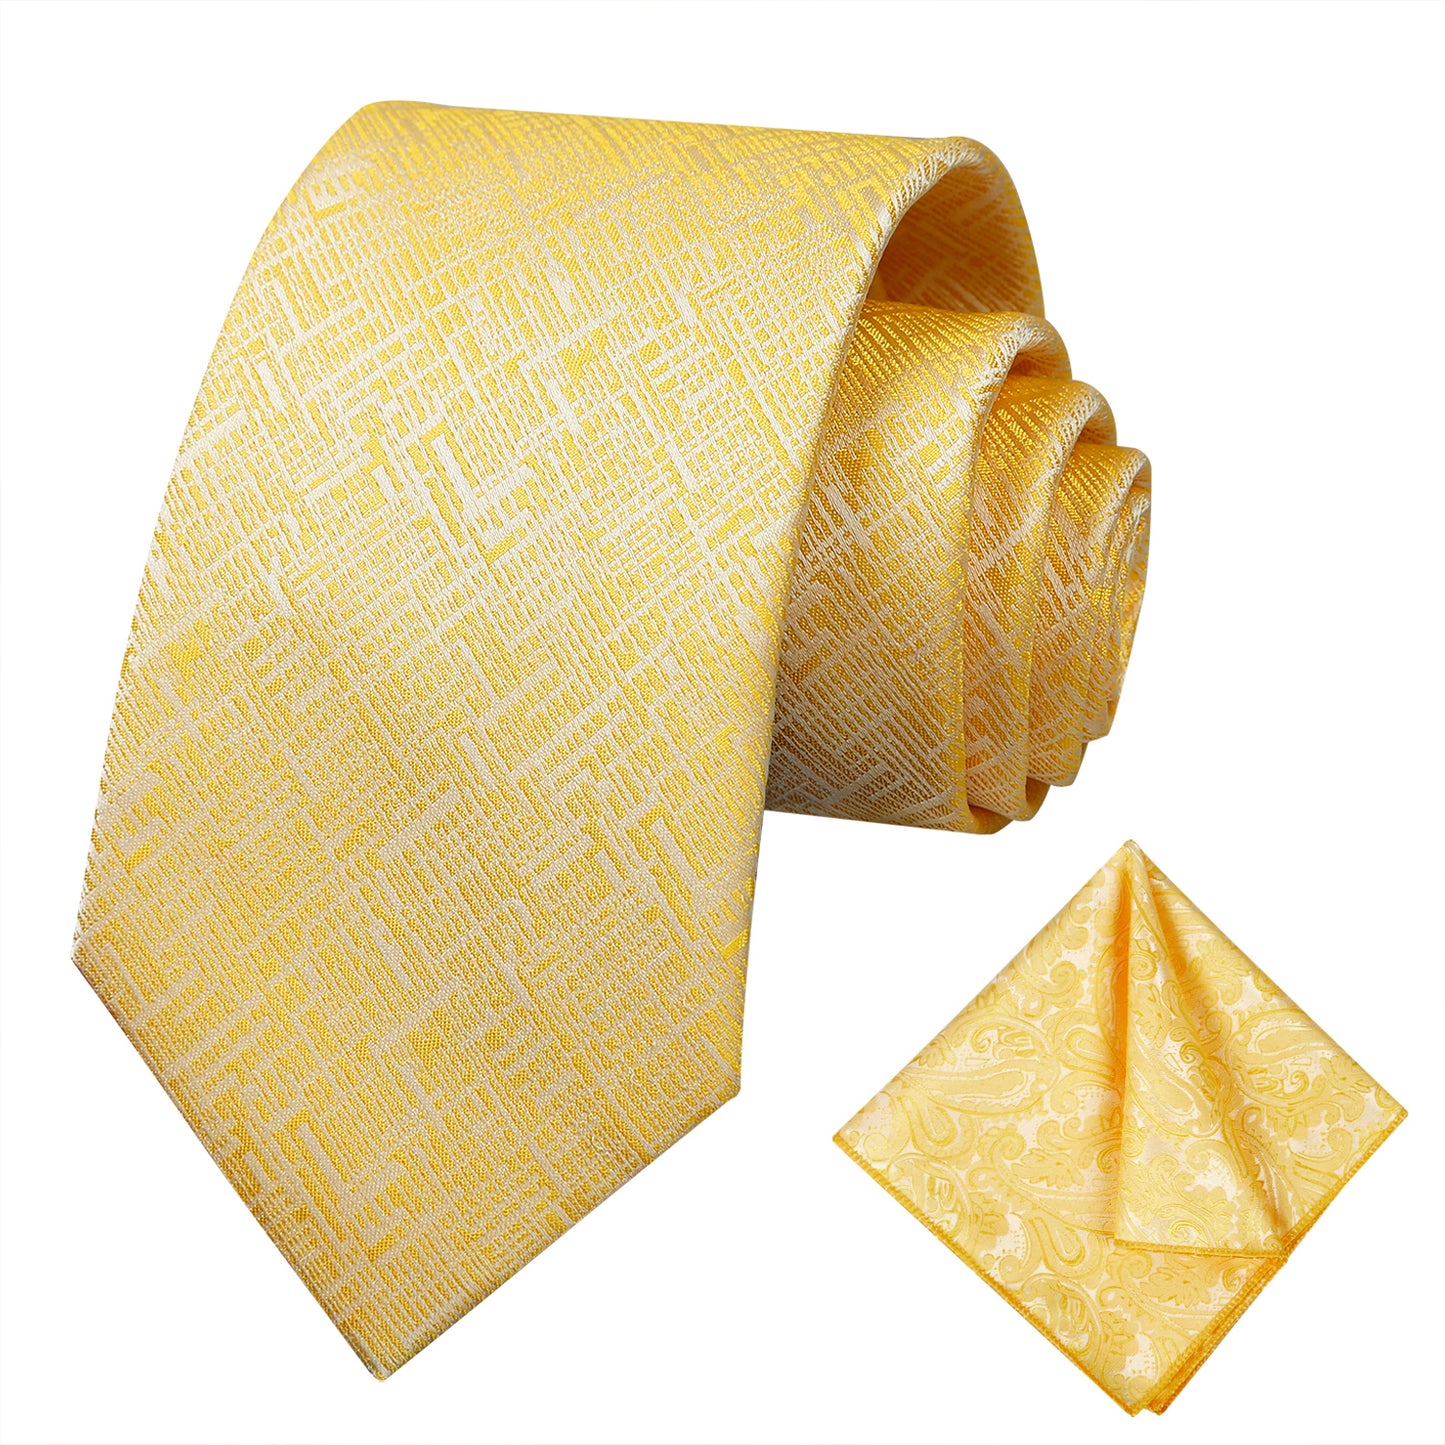 Alizeal Mens Business Party Necktie Regular Size Tie and Handkerchief Set #098